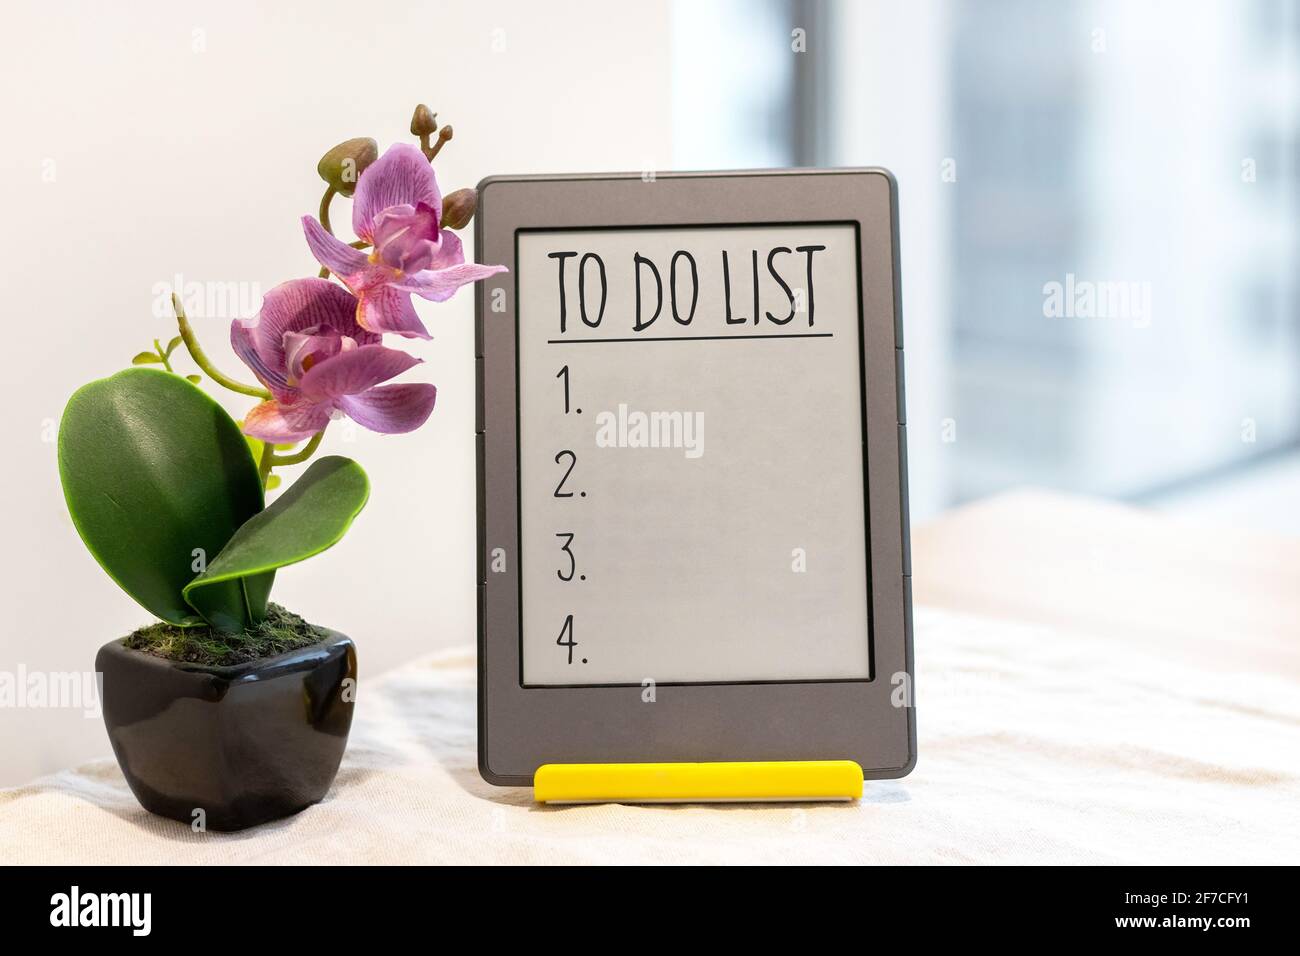 Elenco delle attività in un tablet grigio su un supporto giallo accanto ad un'orchidea rosa artificiale sul tavolo da cucina con una tovaglia di lino vicino alla finestra Foto Stock